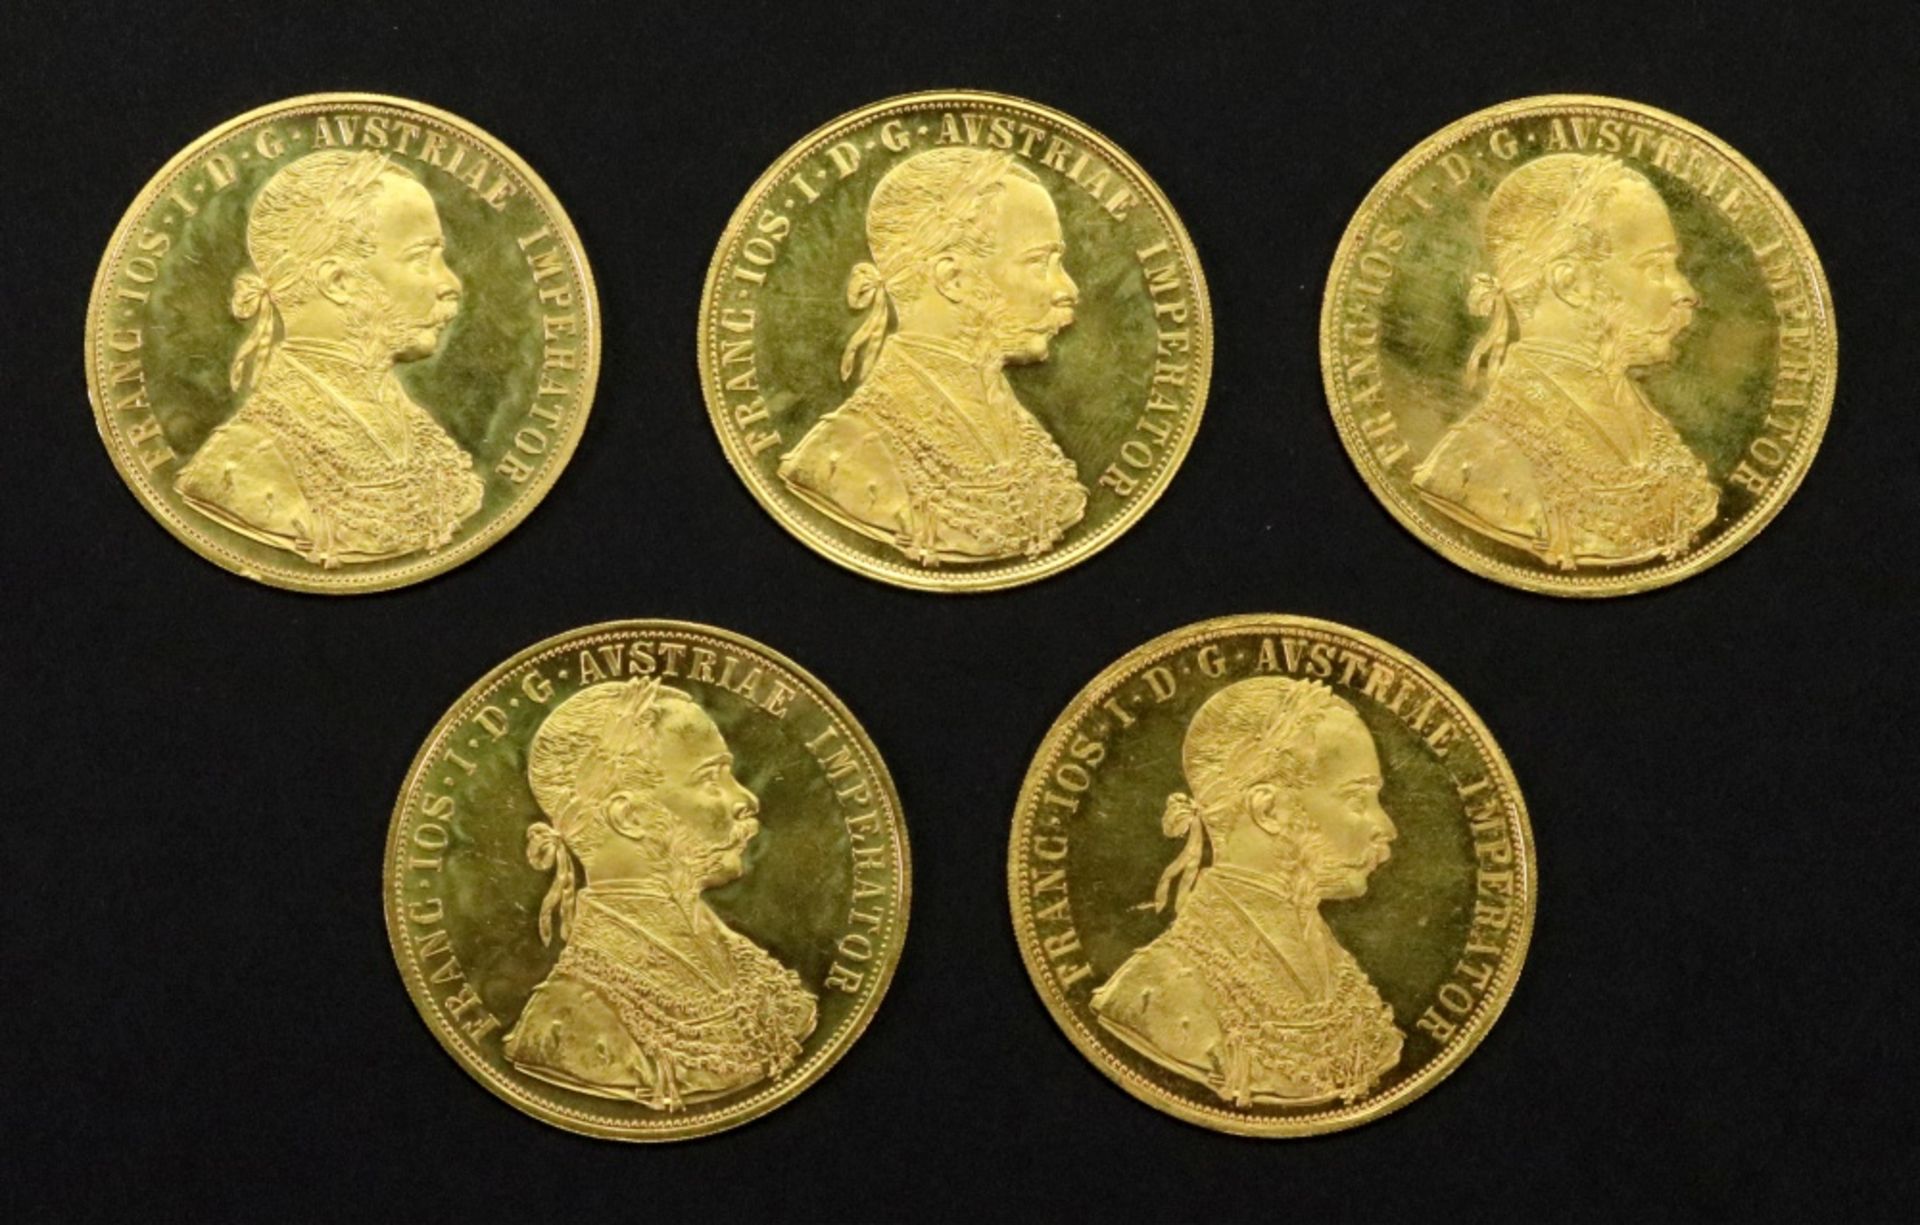 Five Austrian 1915 gold 4 ducats, re-struck, 69.8g.